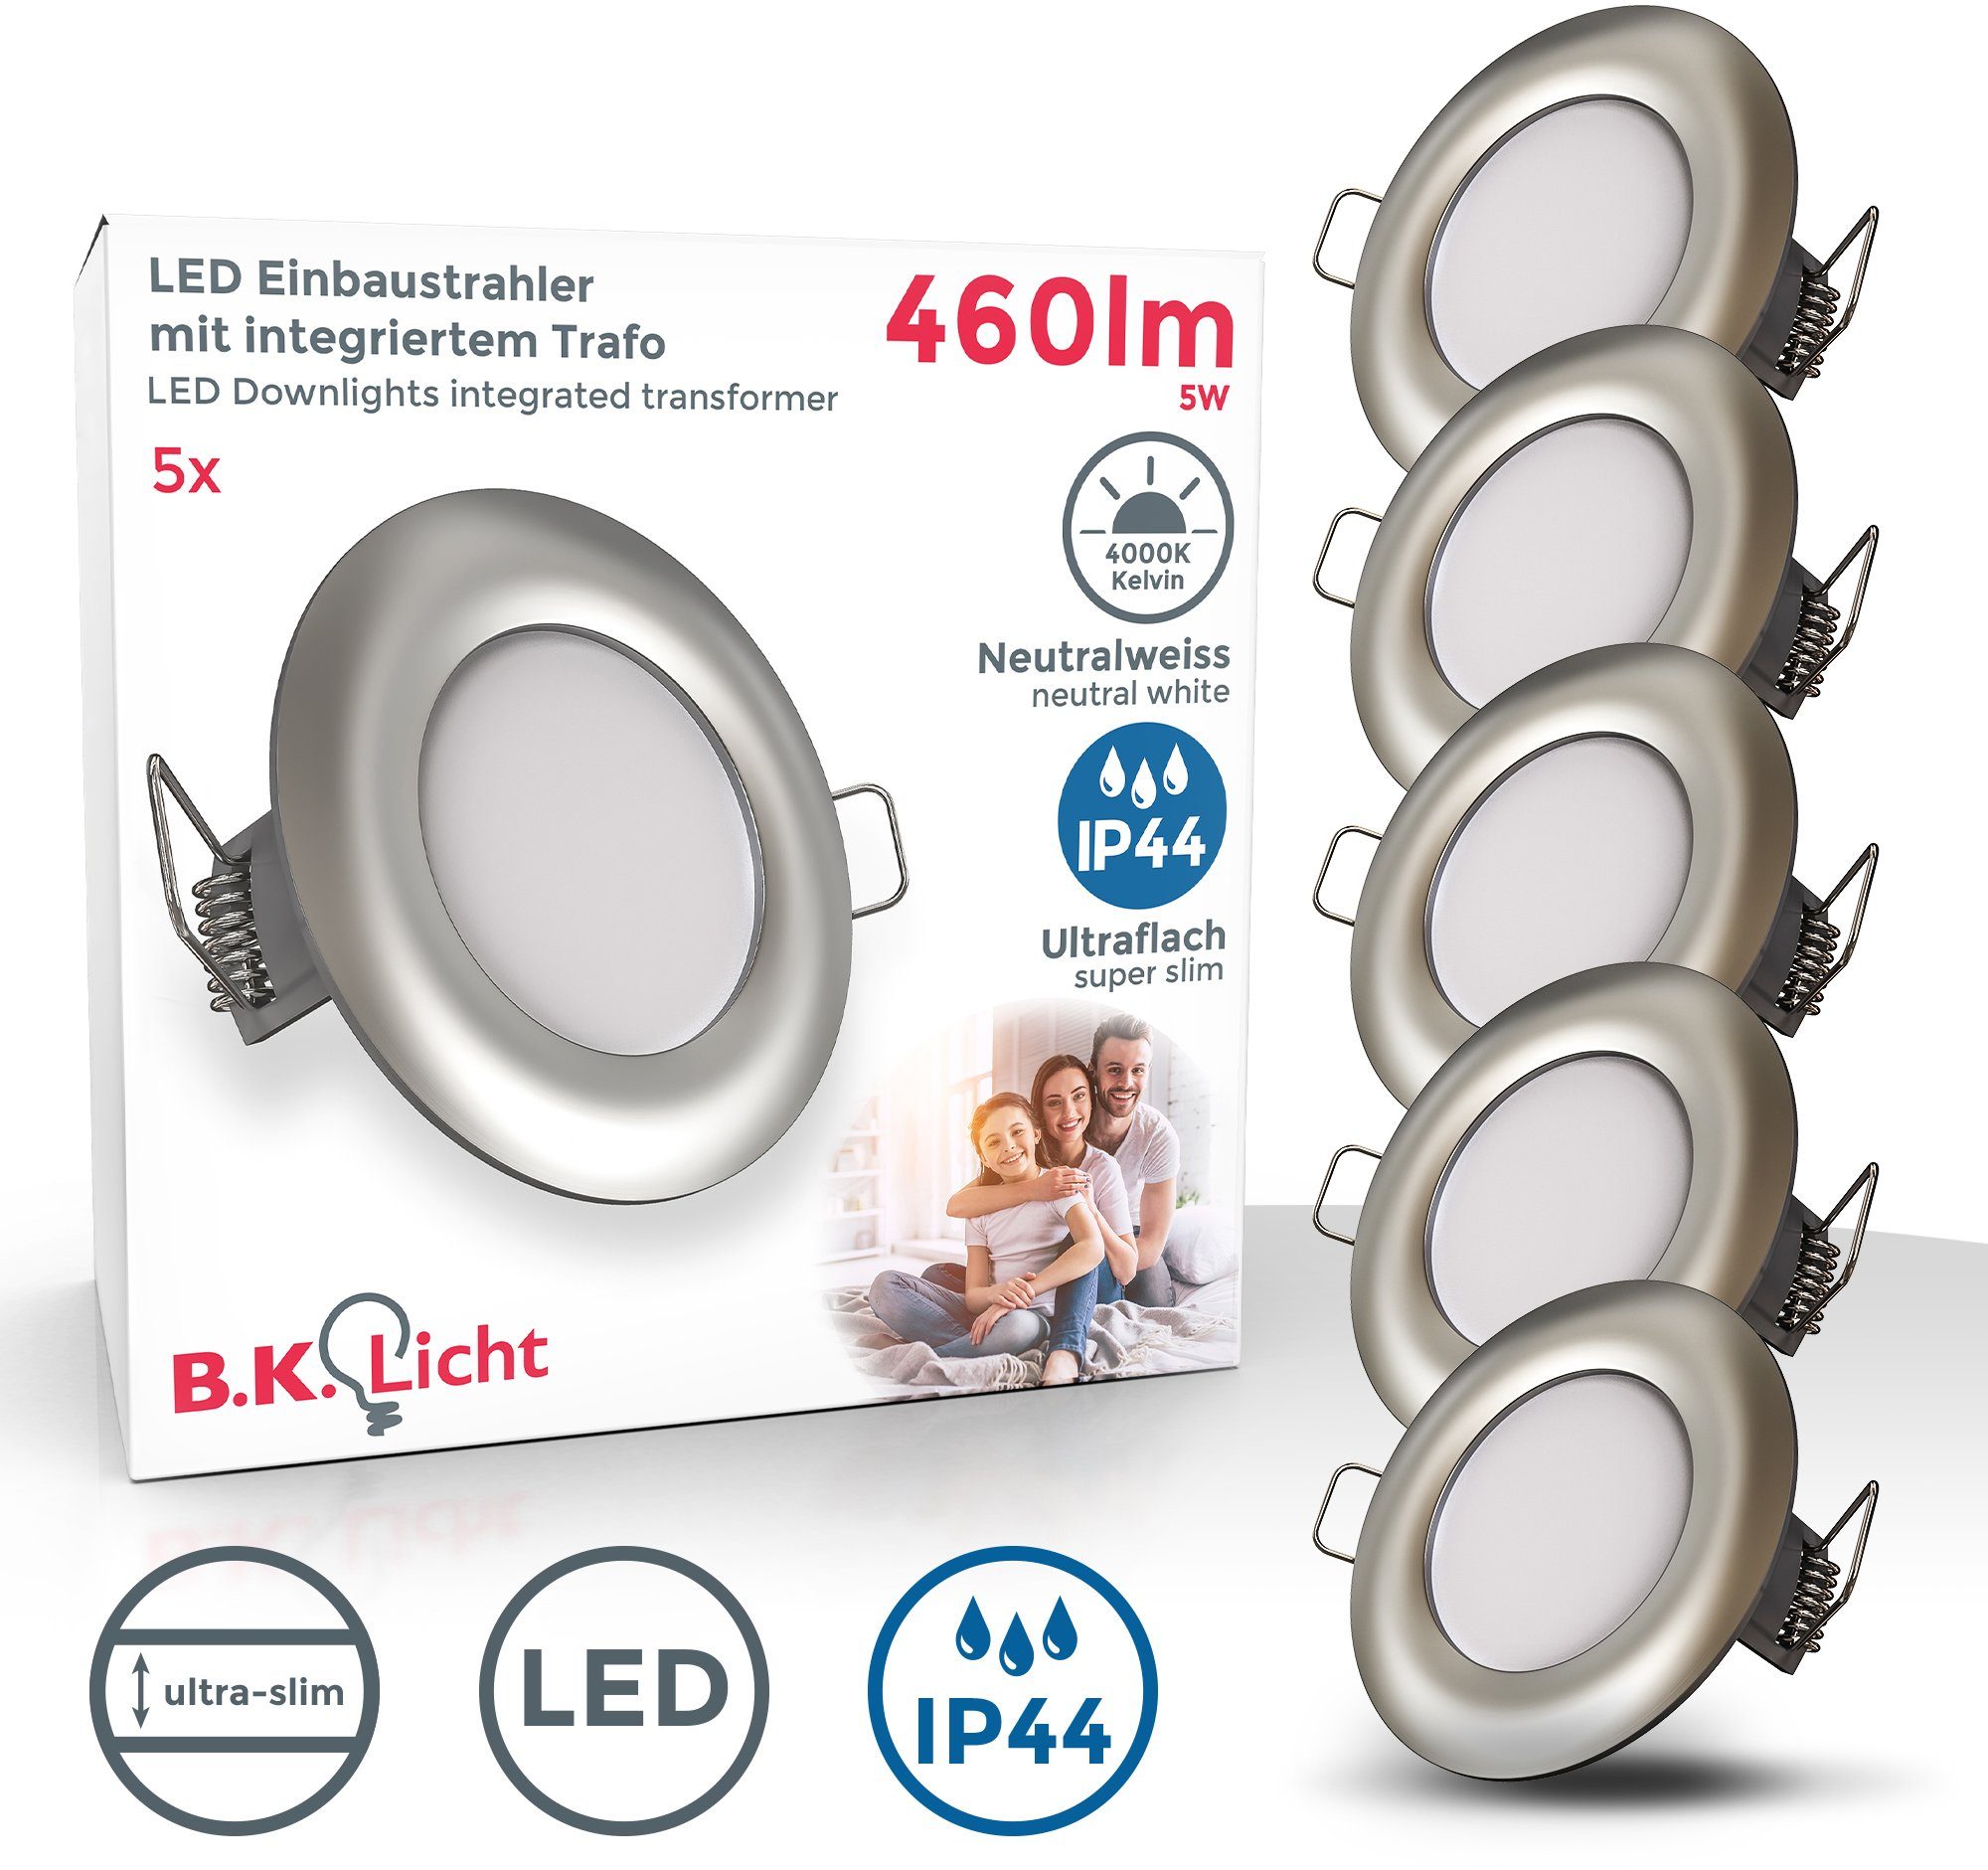 B.K.Licht LED Einbauleuchte, LED fest integriert, Neutralweiß, Einbaustrahler, ultra-flach, 5x 5W 460lm 4000K, matt-nickel, IP44 | Alle Lampen